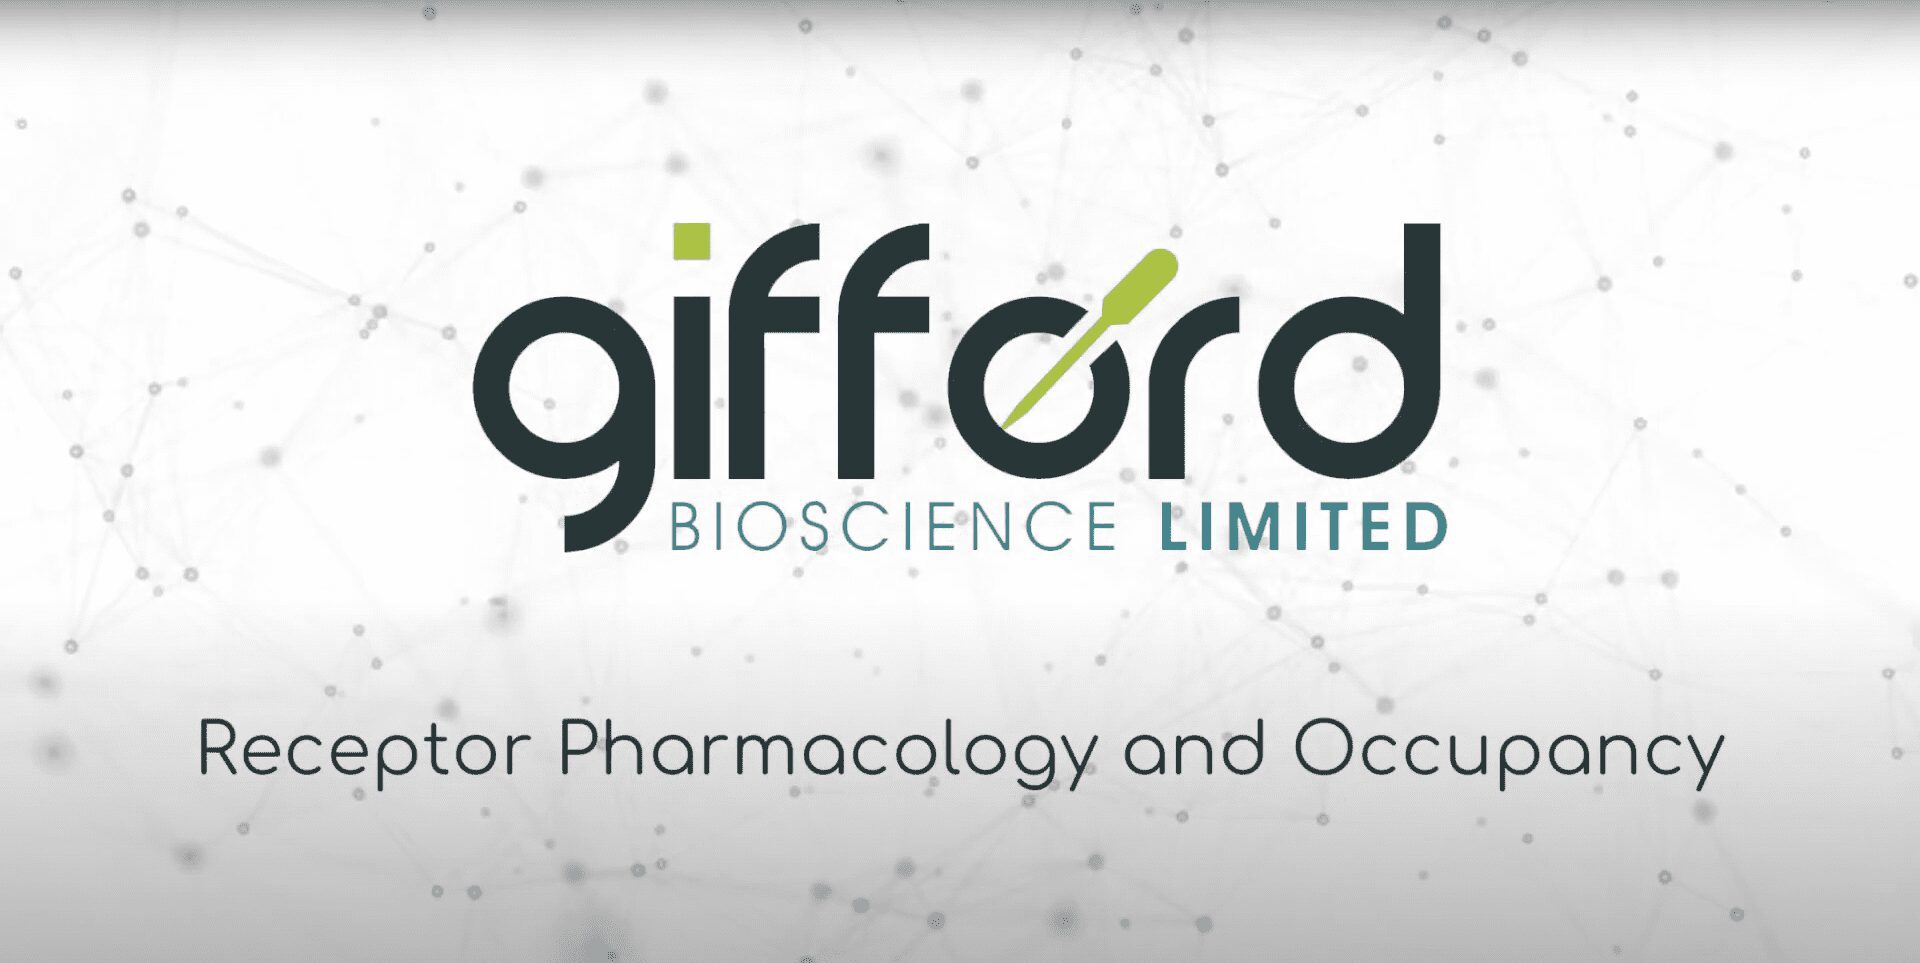 SfN flyer Gifford Bioscience